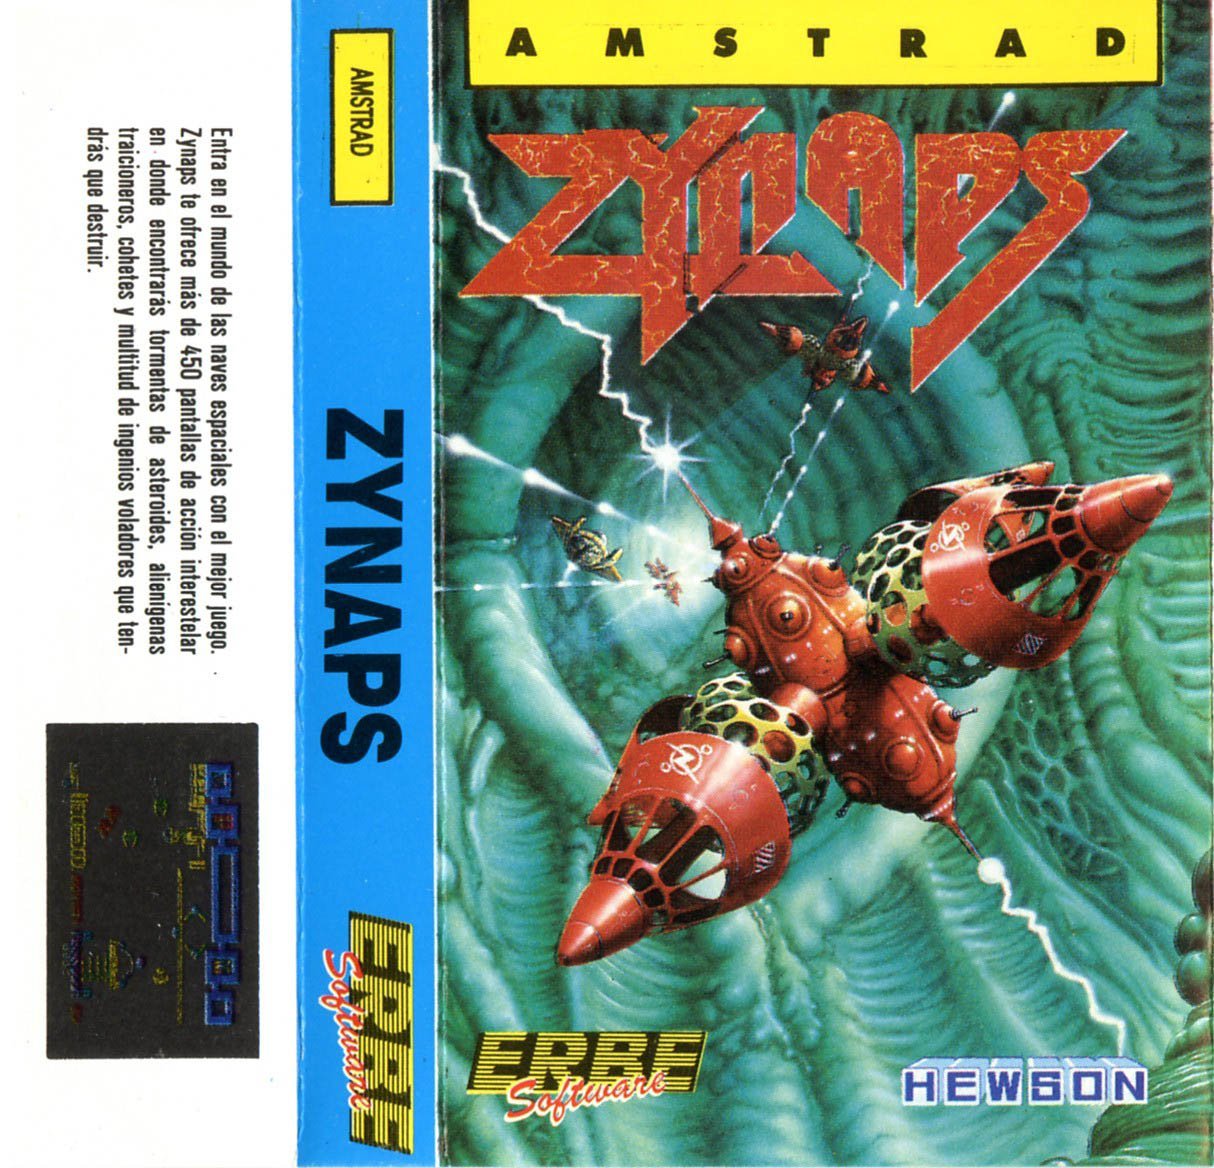 Caratula de Zynaps para Amstrad CPC